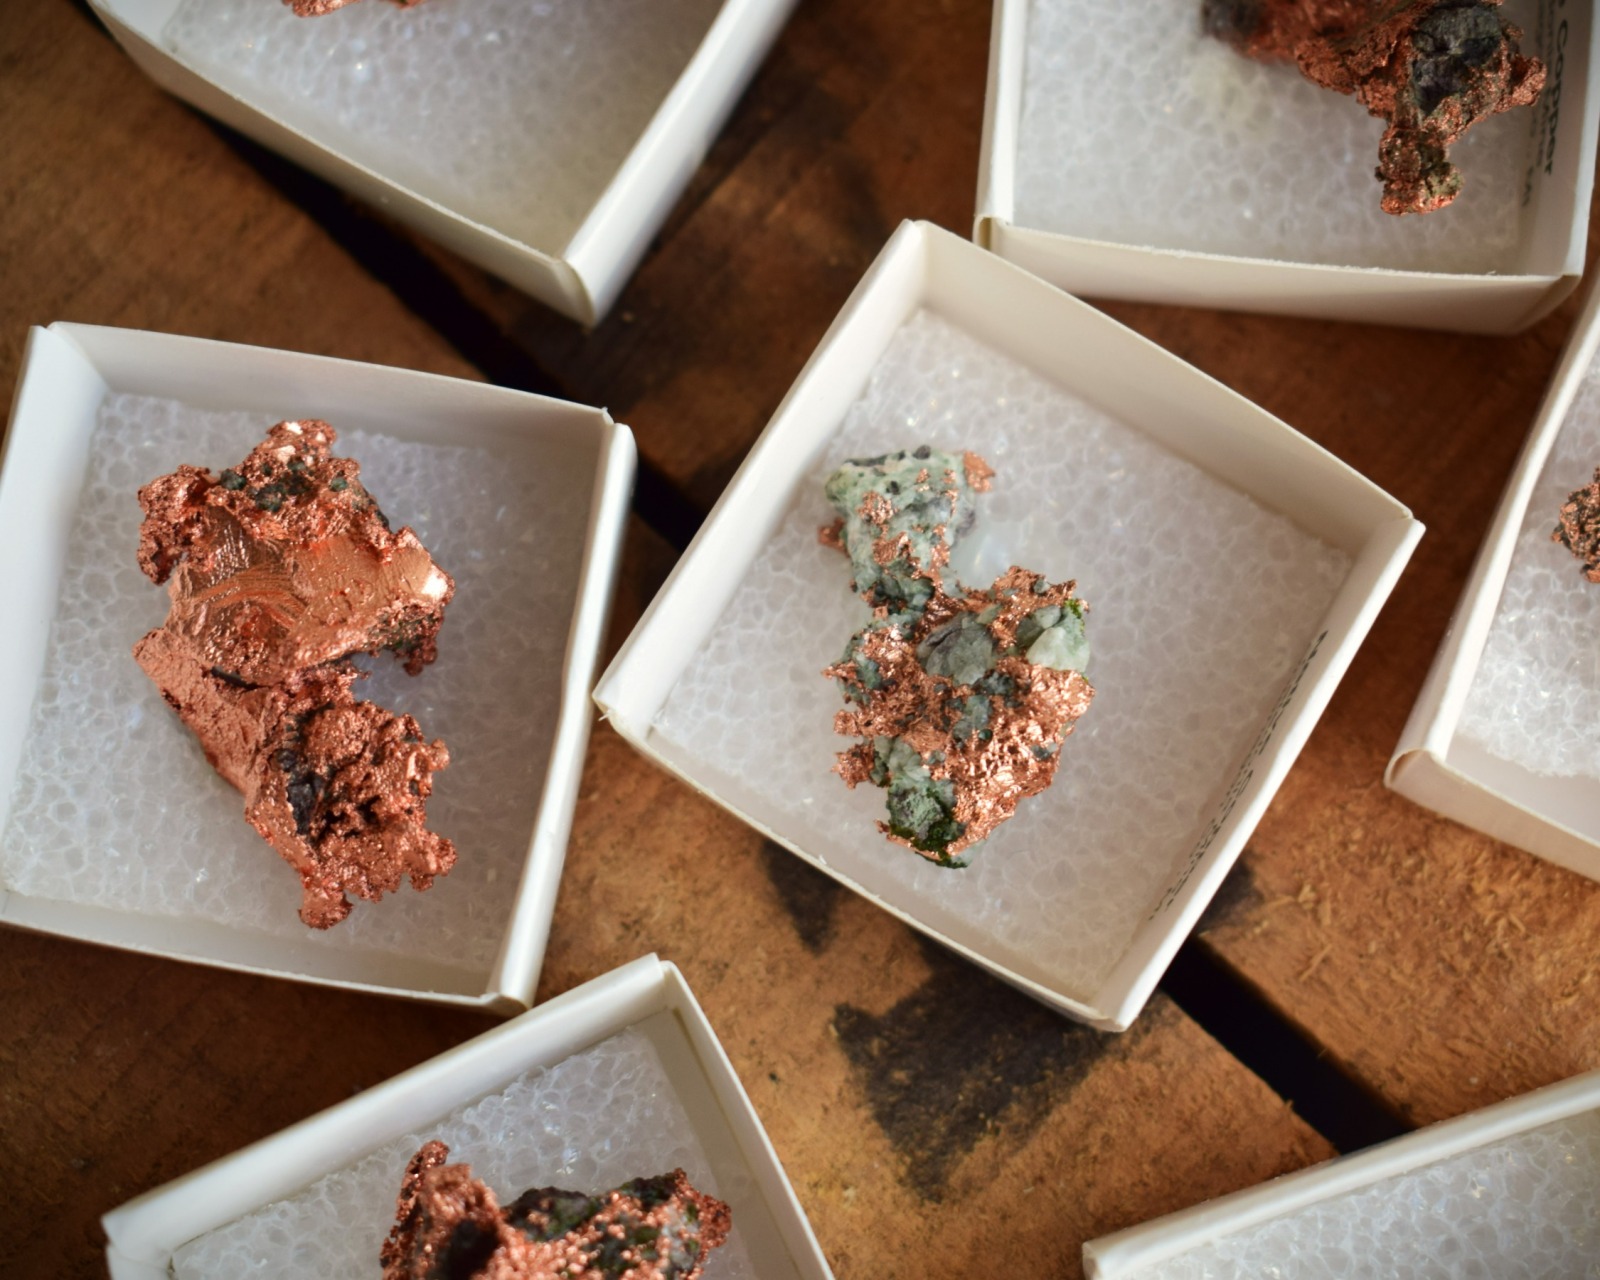 gediegene Kupfer Stufen - Kupfer in natürlicher Form als Mineral